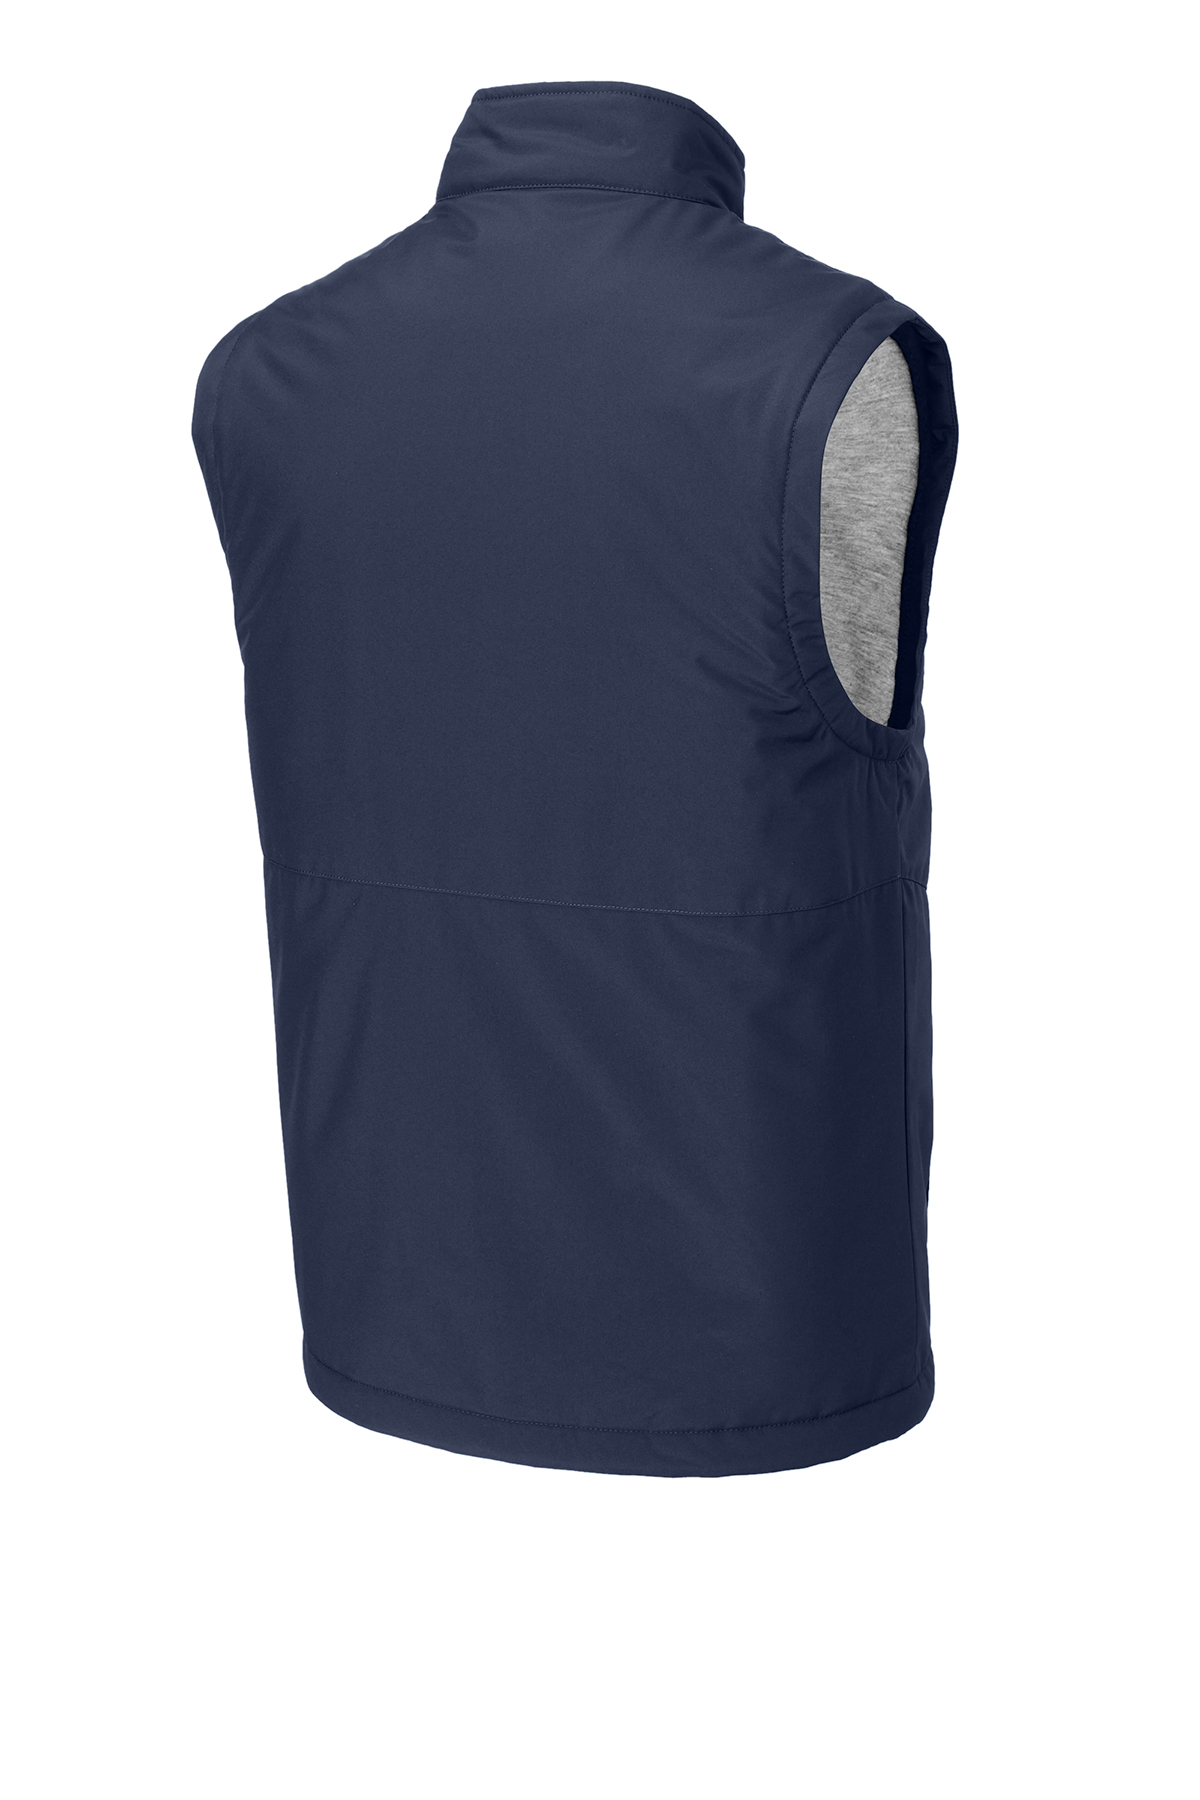 Sport-Tek Insulated Vest | Product | Sport-Tek